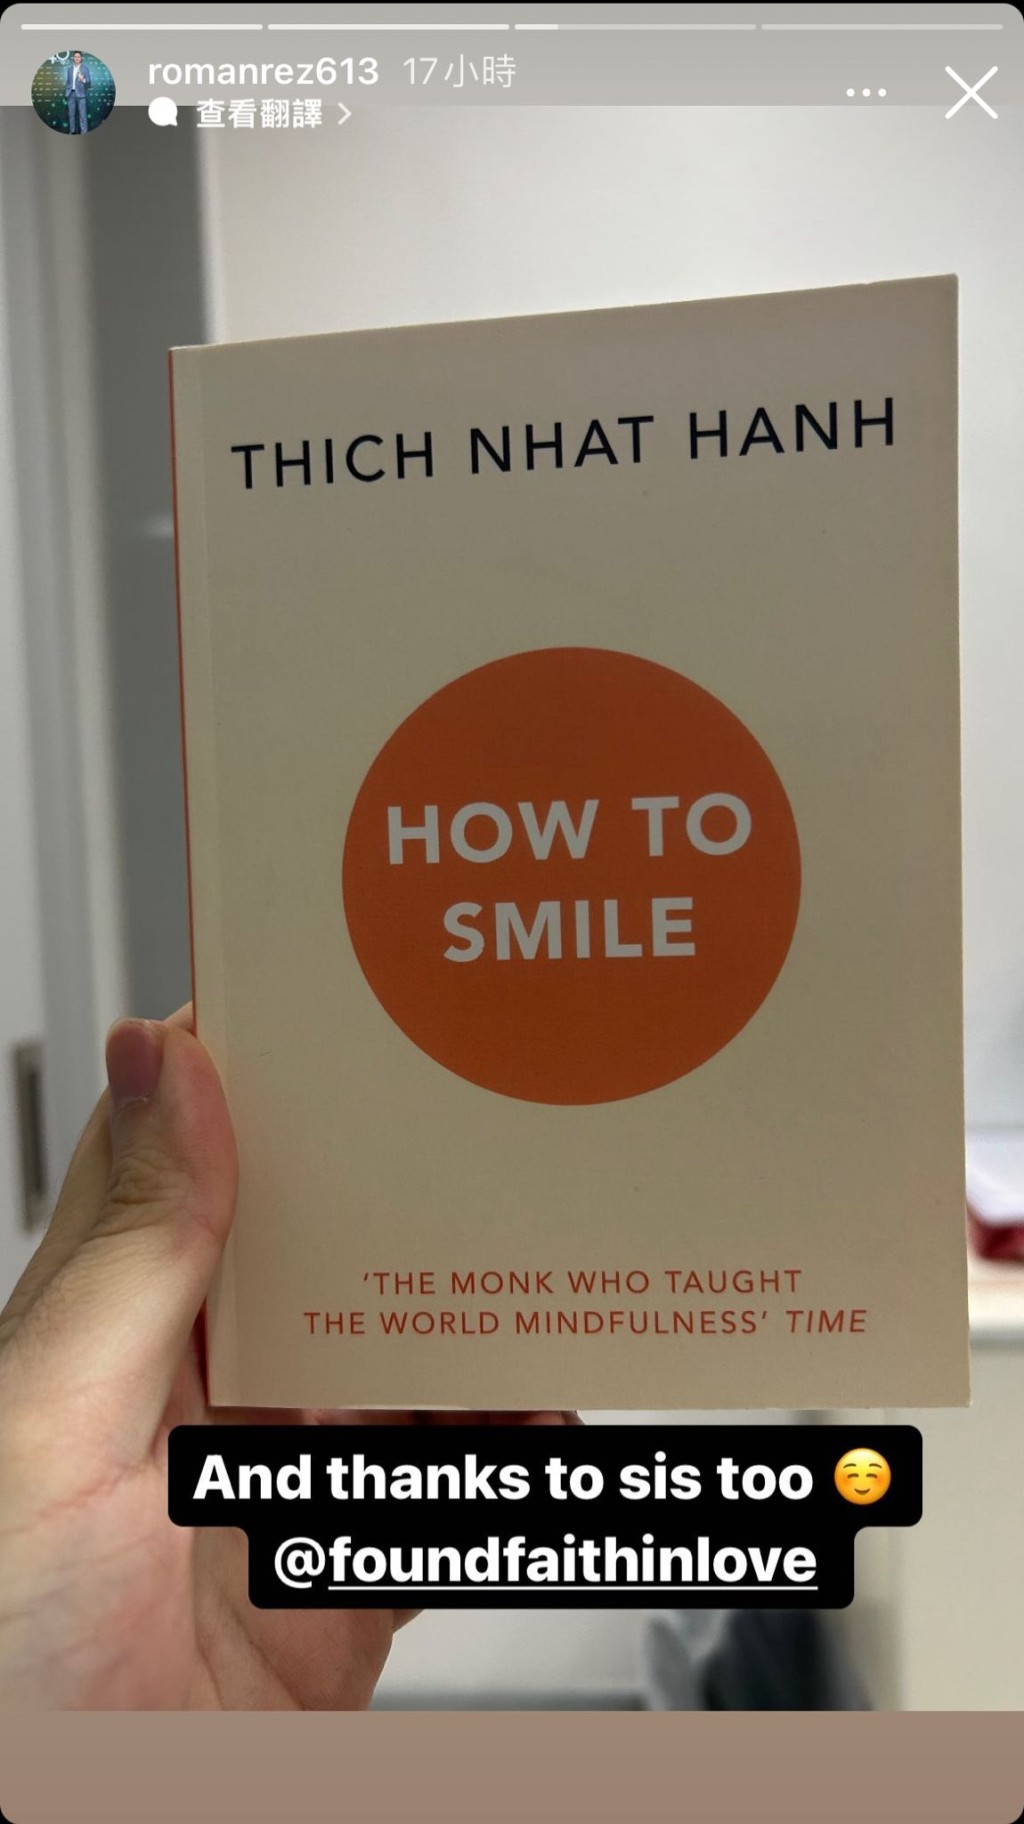 赵式正感激家姐赵式芝的好书分享，可见赵式芝推荐的是一行禅师（Thich Nhat Hanh）的作品《How to Smile》，对同父异母的细佬赵式正尽显关怀。